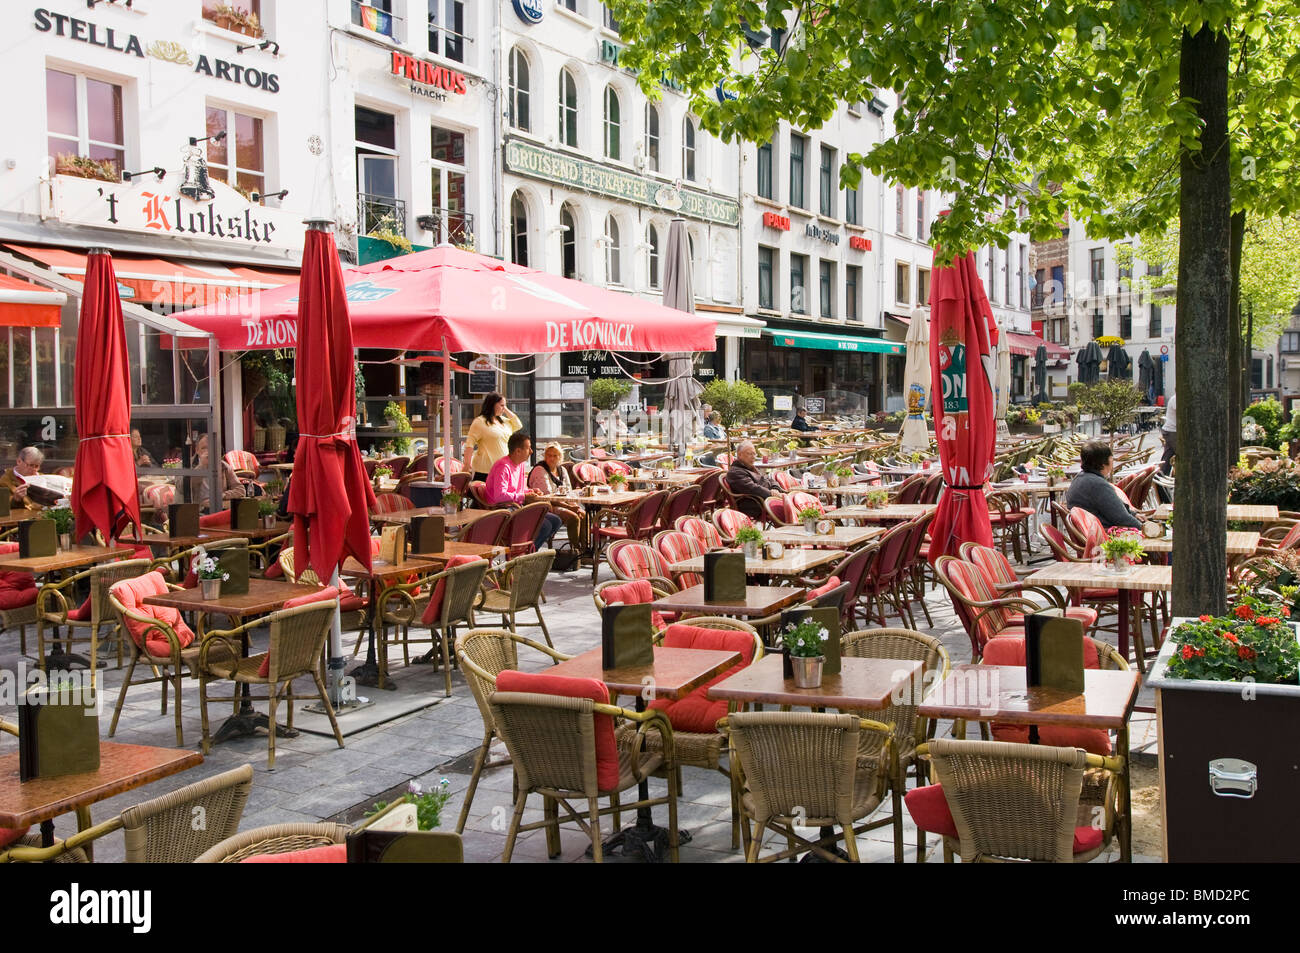 Street Cafe scene in Groenplaats, Anversa, Belgio Foto Stock